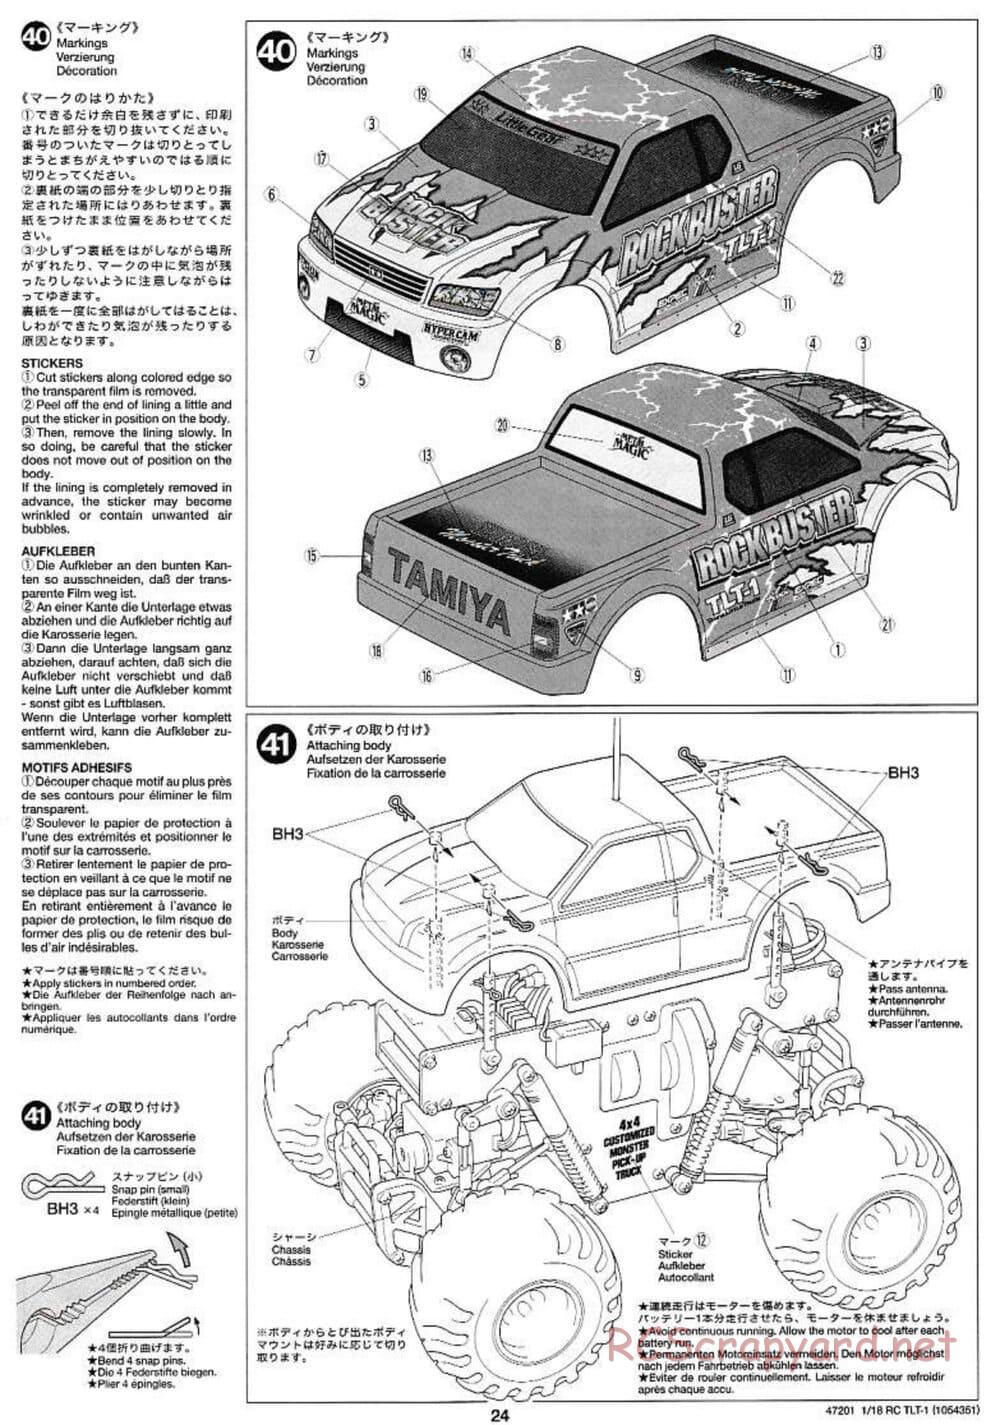 Tamiya - Rock Buster - TLT-1 Chassis - Manual - Page 24